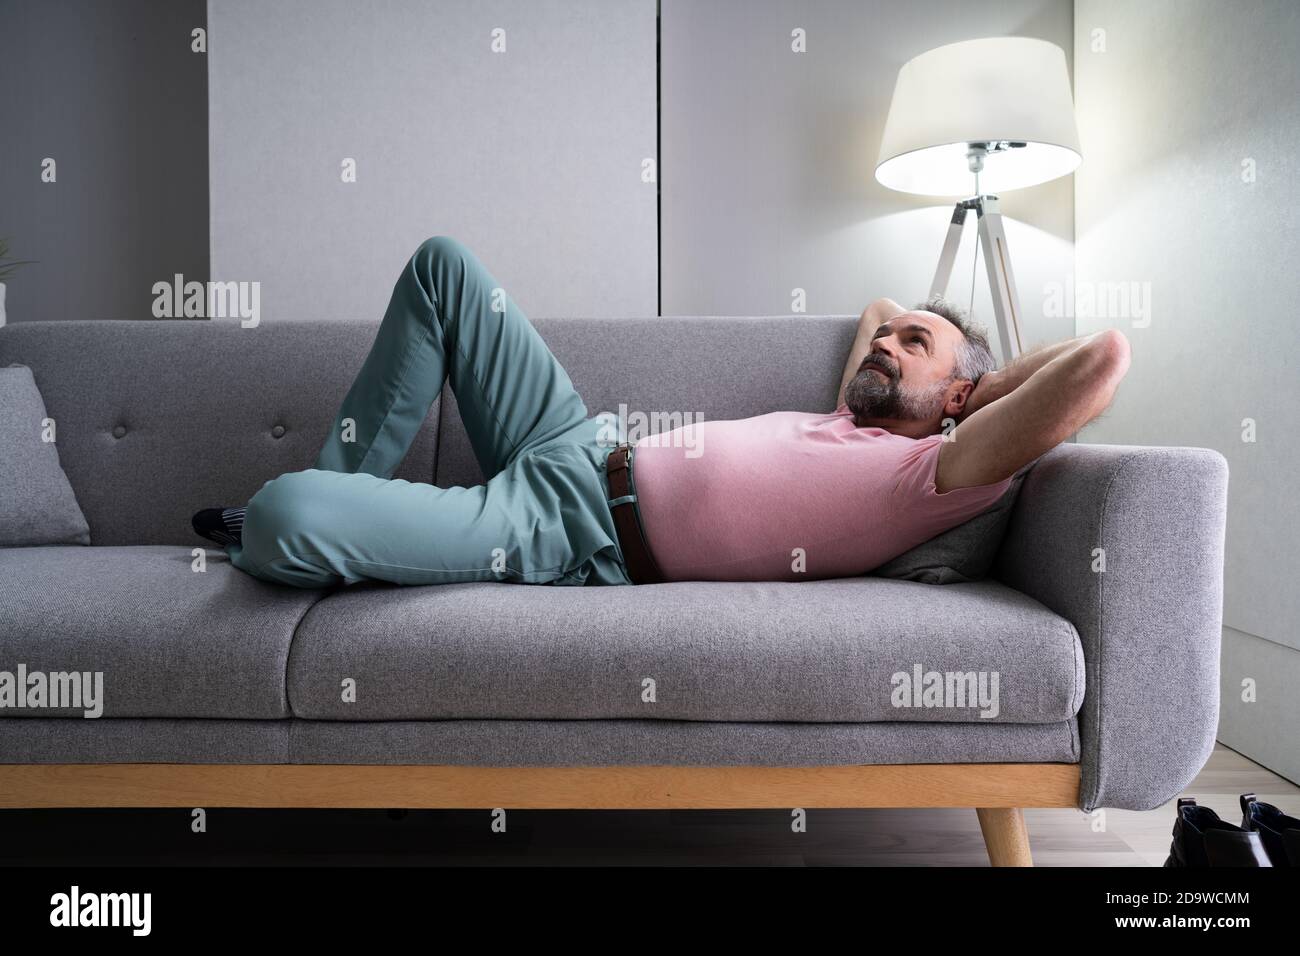 Senior Man Relaxing On Sofa In Living Room Stock Photo